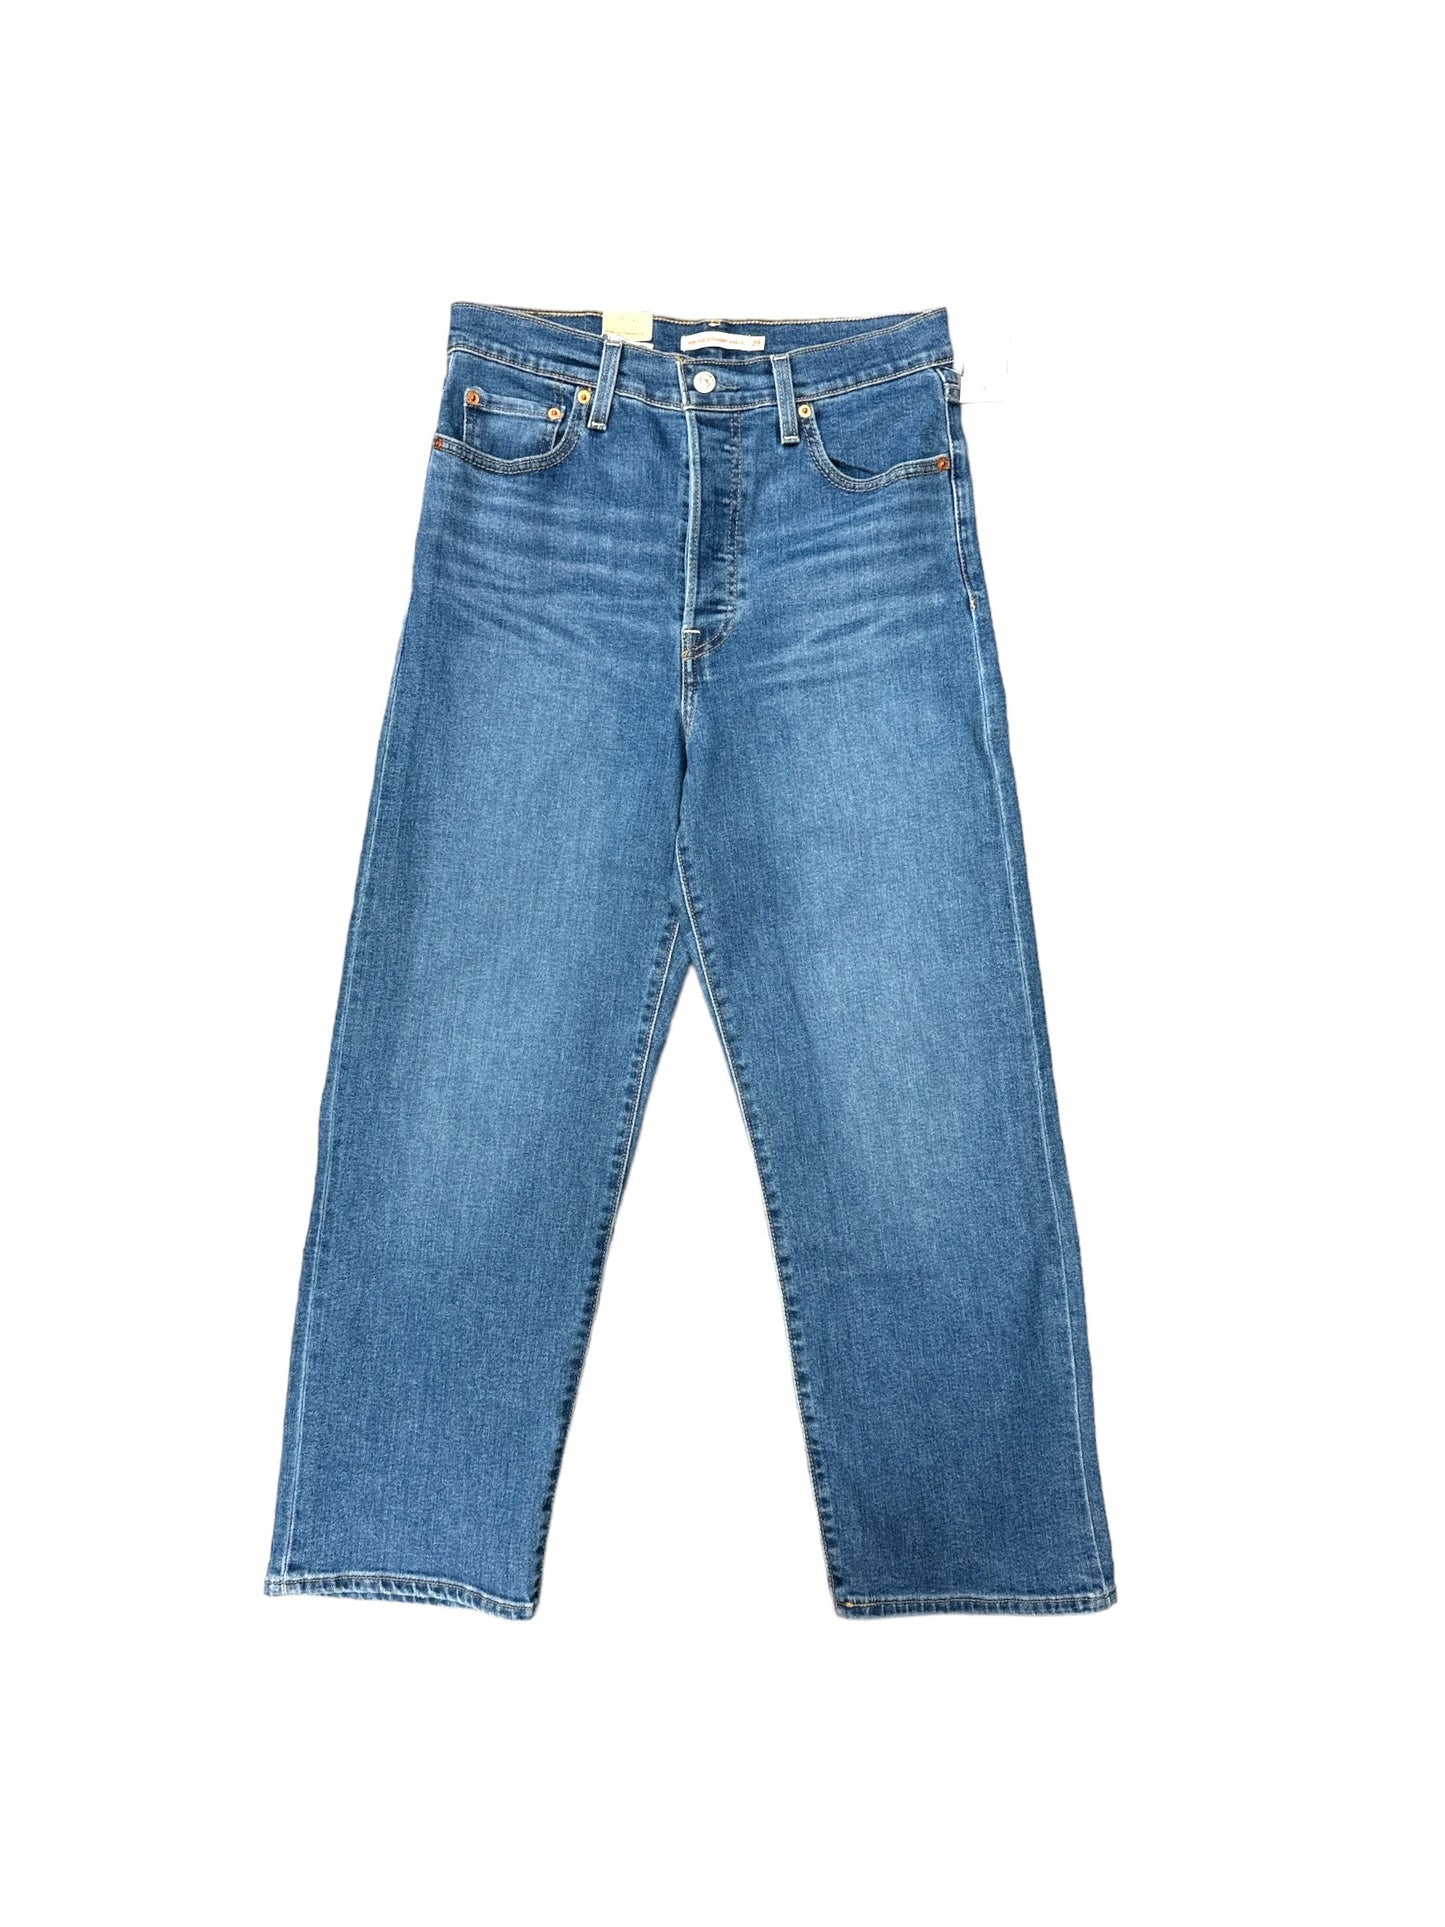 Blue Denim Jeans Boyfriend Levis, Size 8